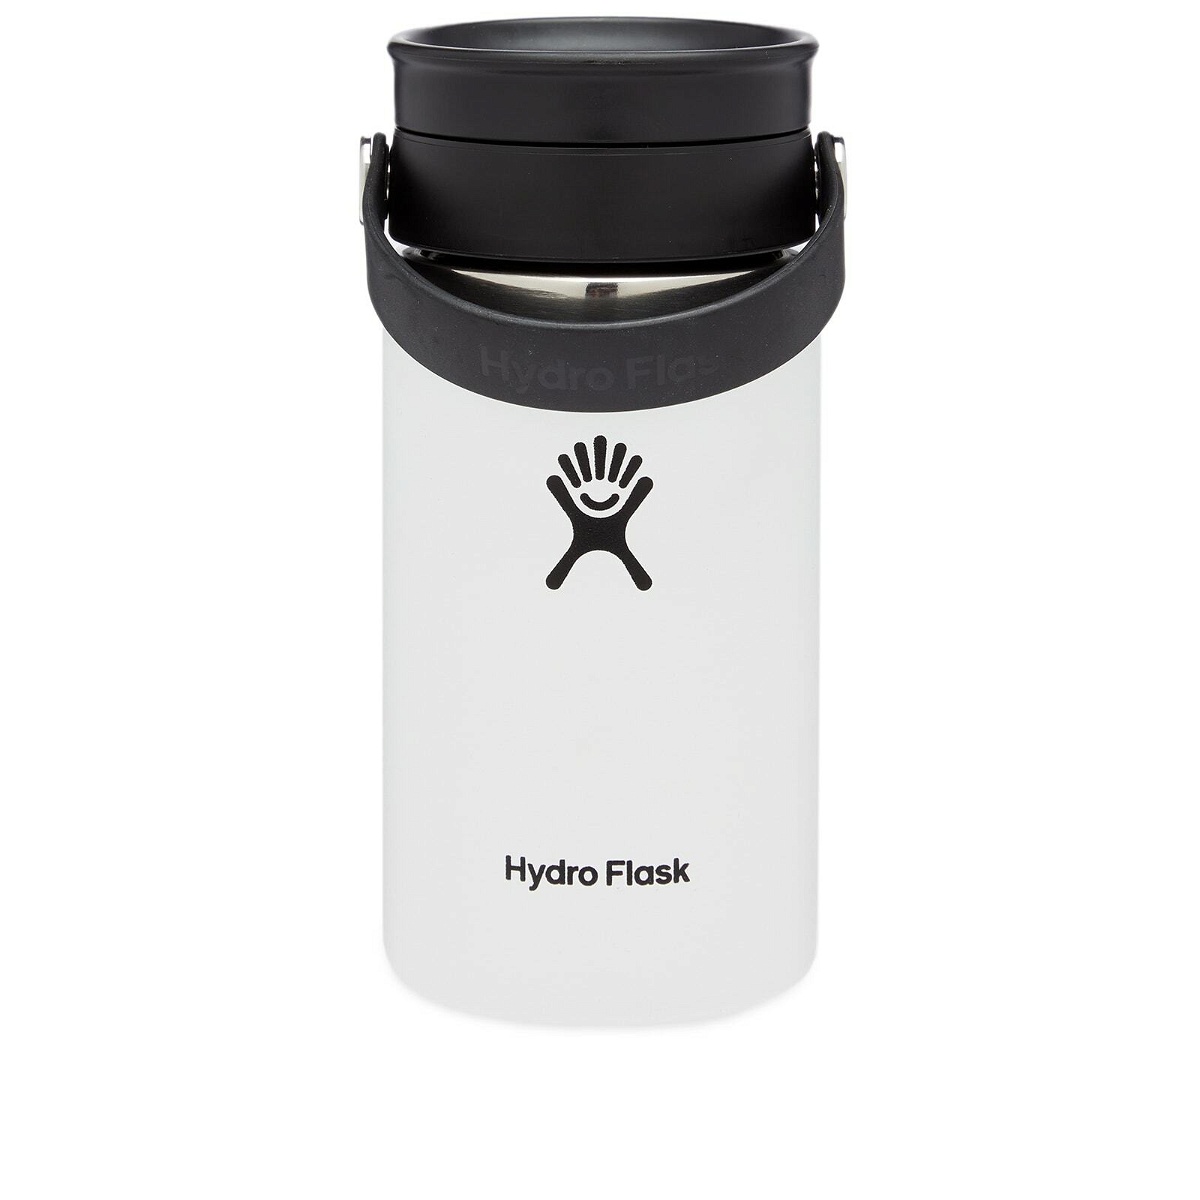 Hydro Flask 12 oz. Flex Sip Bottle